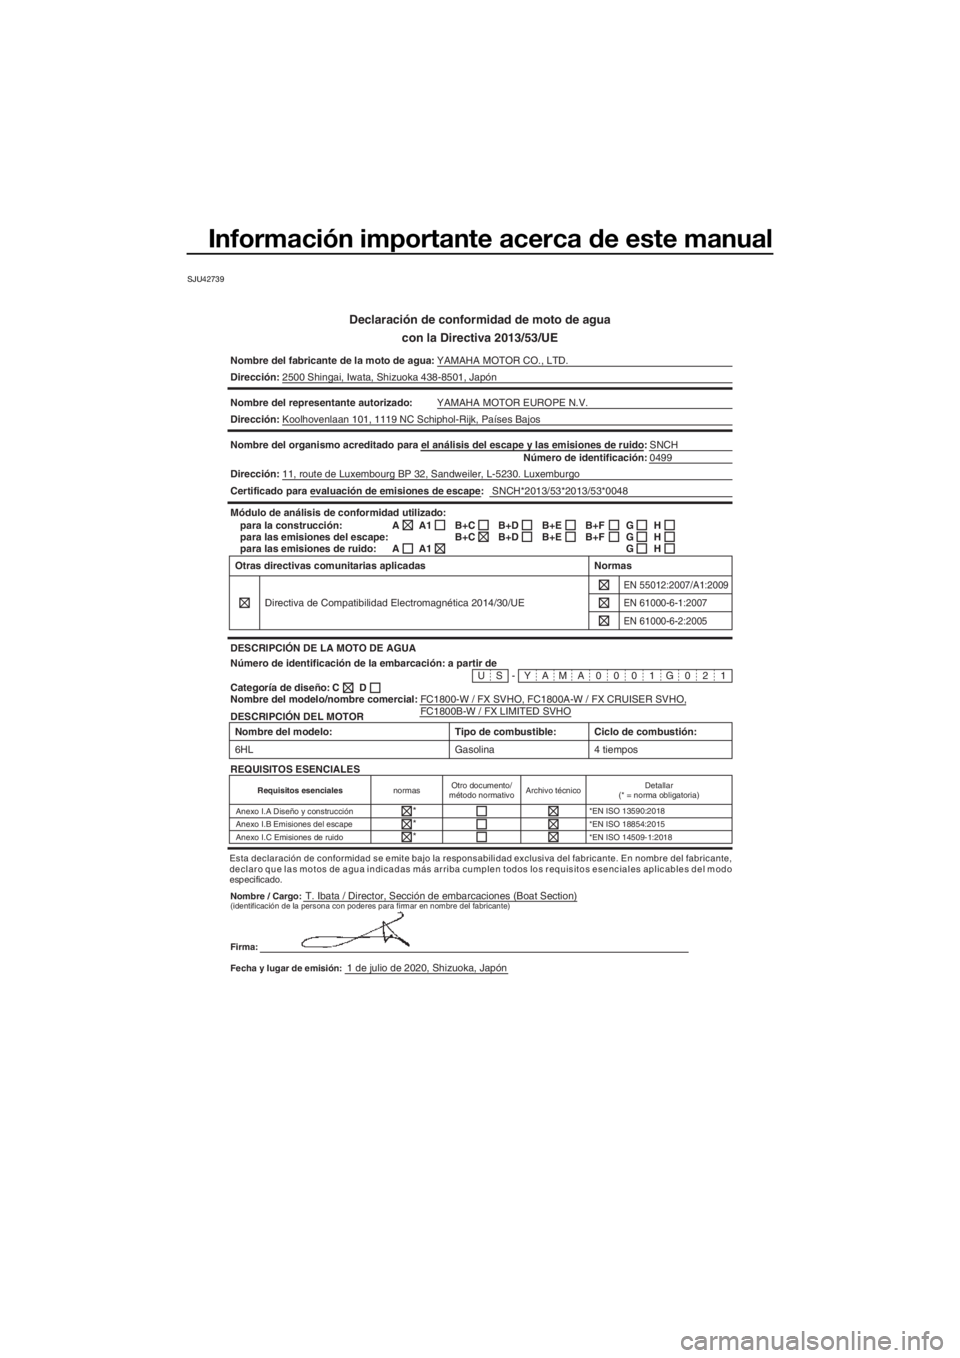 YAMAHA FX SVHO 2021  Manuale de Empleo (in Spanish) Información importante acerca de este manual
SJU42739
Declaración de conformidad de moto de agua
con la Directiva 2013/53/UE
Nombre del fabricante de la moto de a gua:YAMAHA MOTOR CO., LTD.
Direcci�